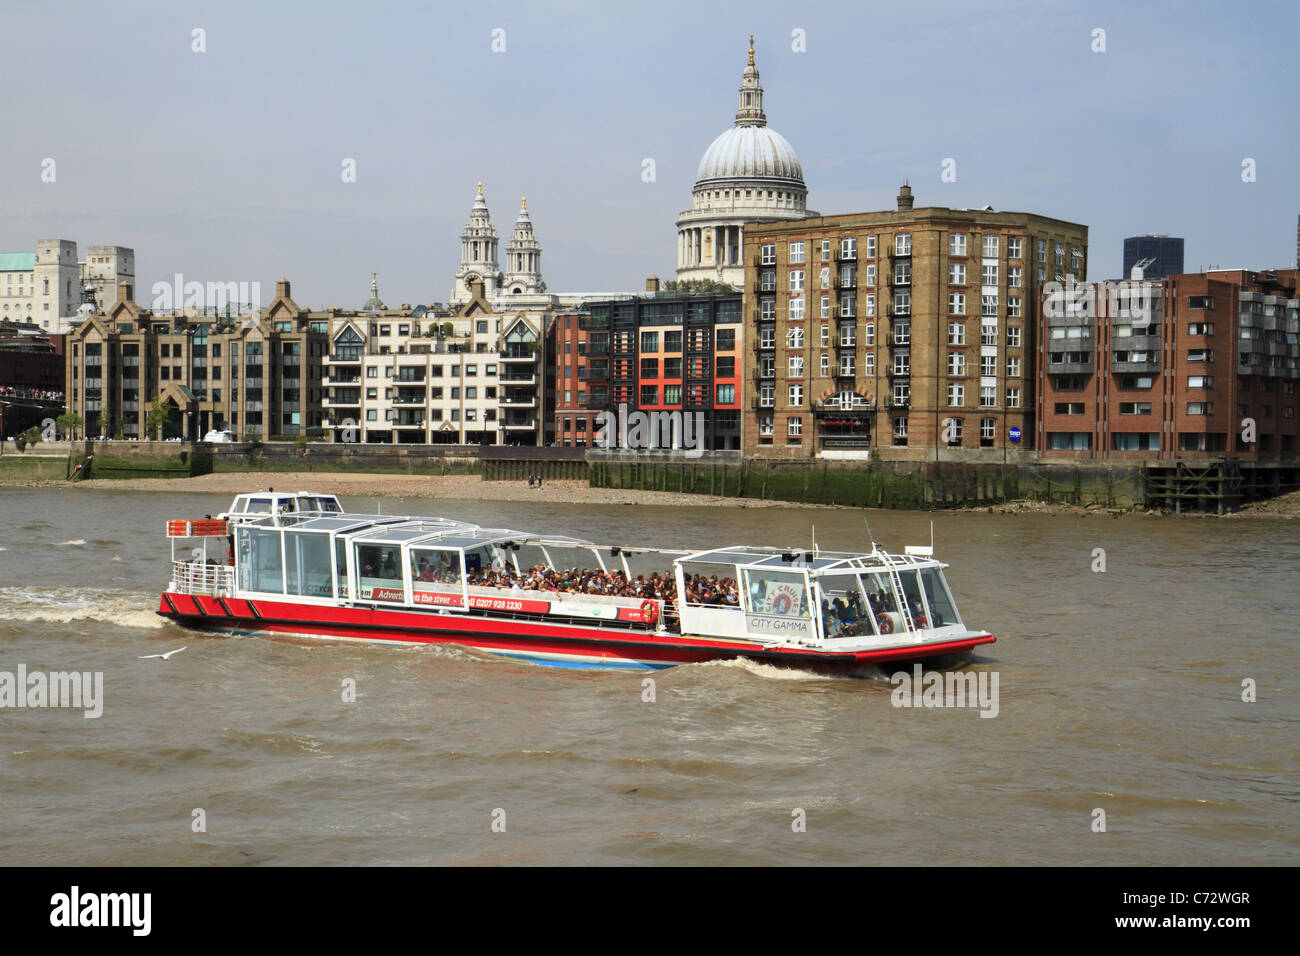 Crociera turistica barca sul fiume Tamigi, London, Regno Unito Foto Stock